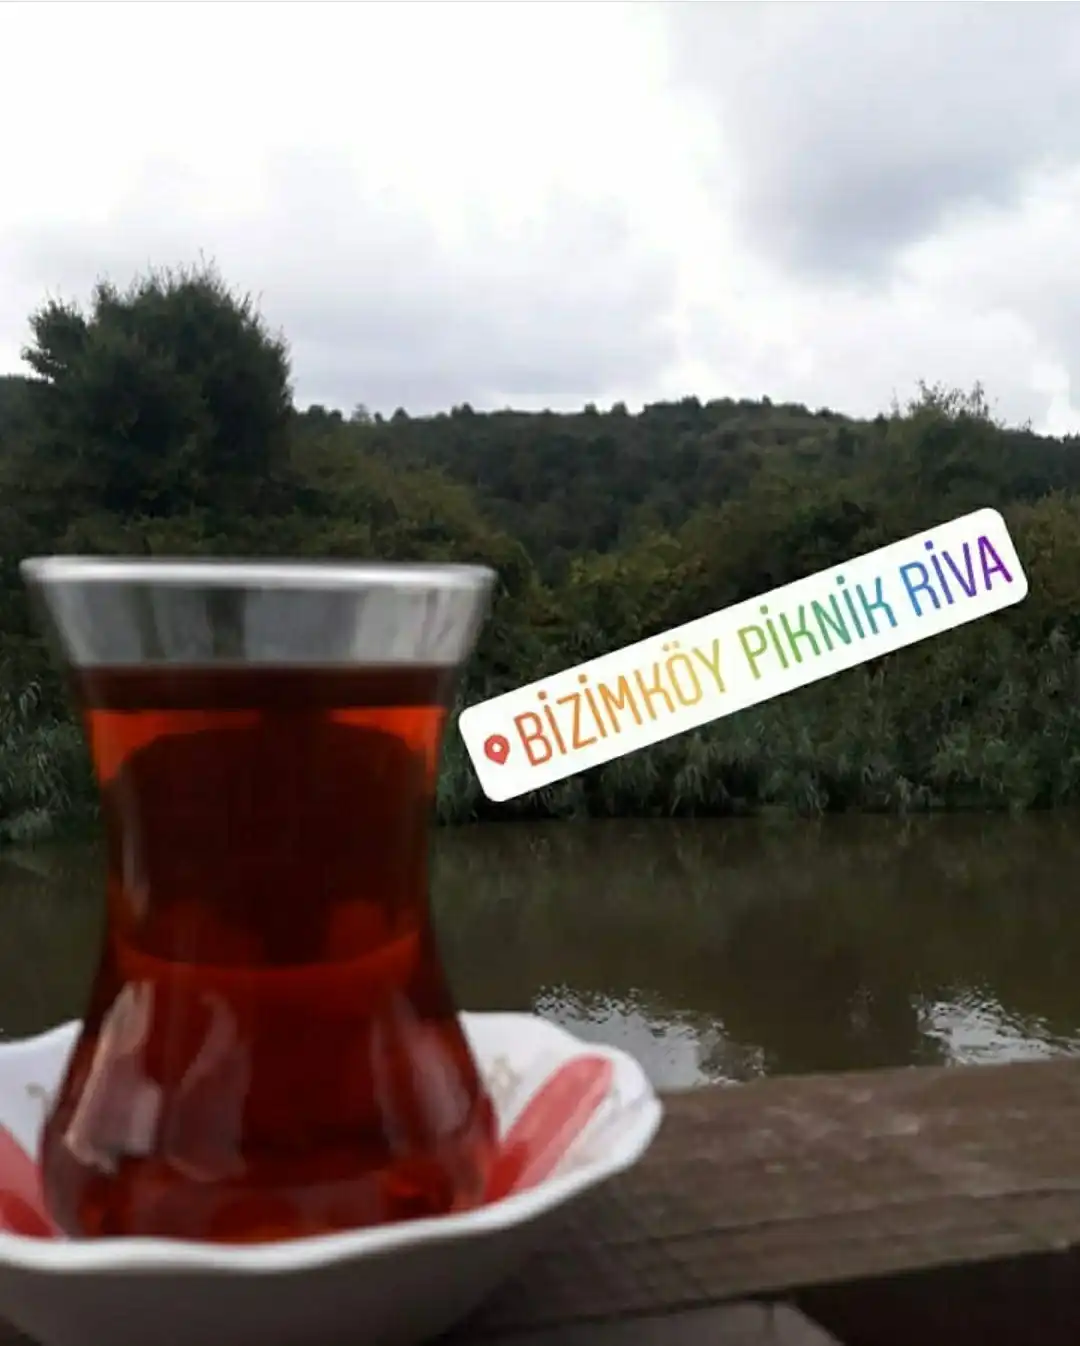 Bizimköy Piknik RİVA